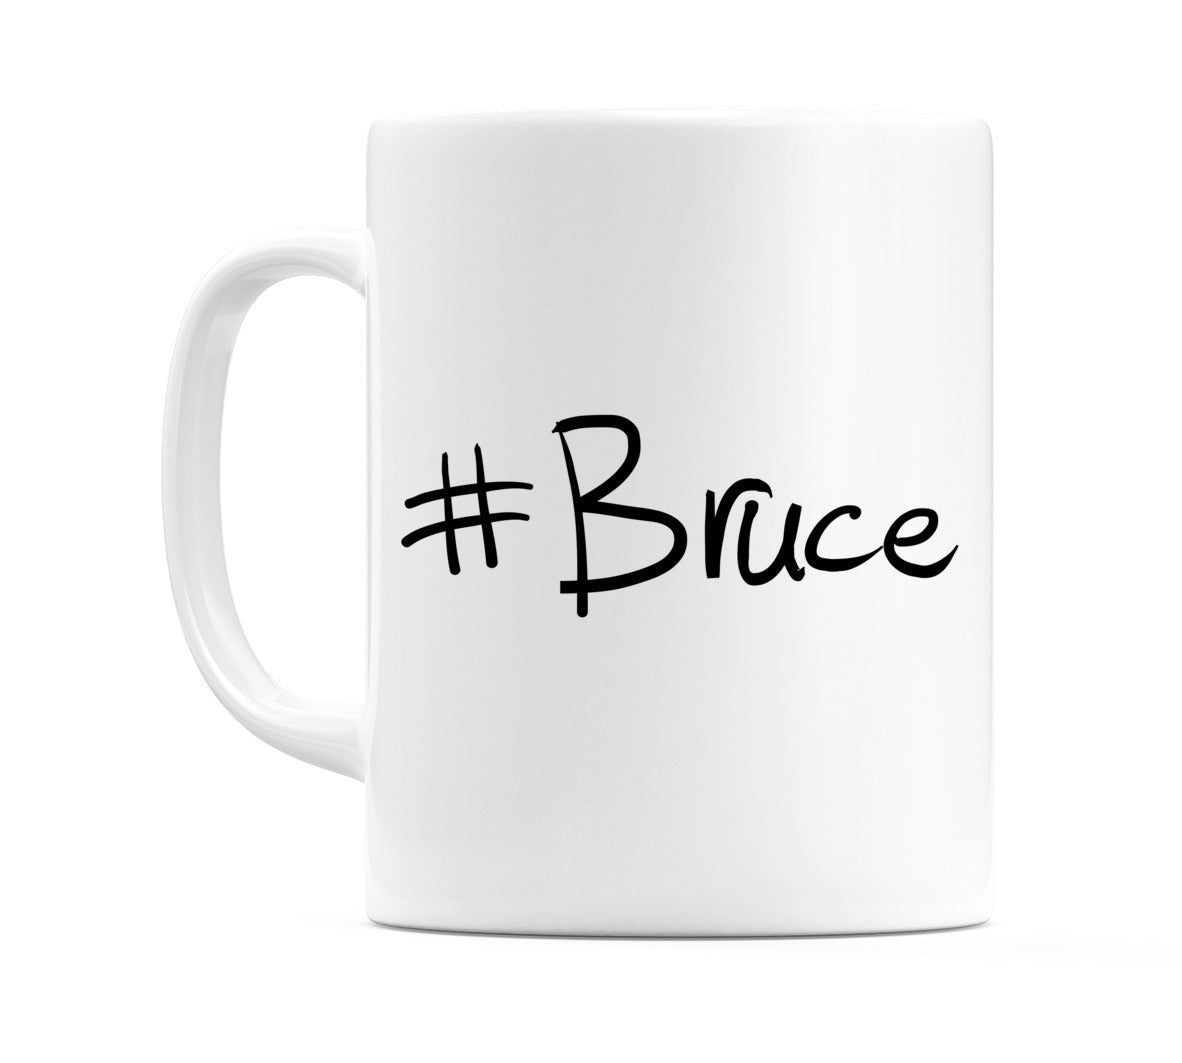 #Bruce Mug